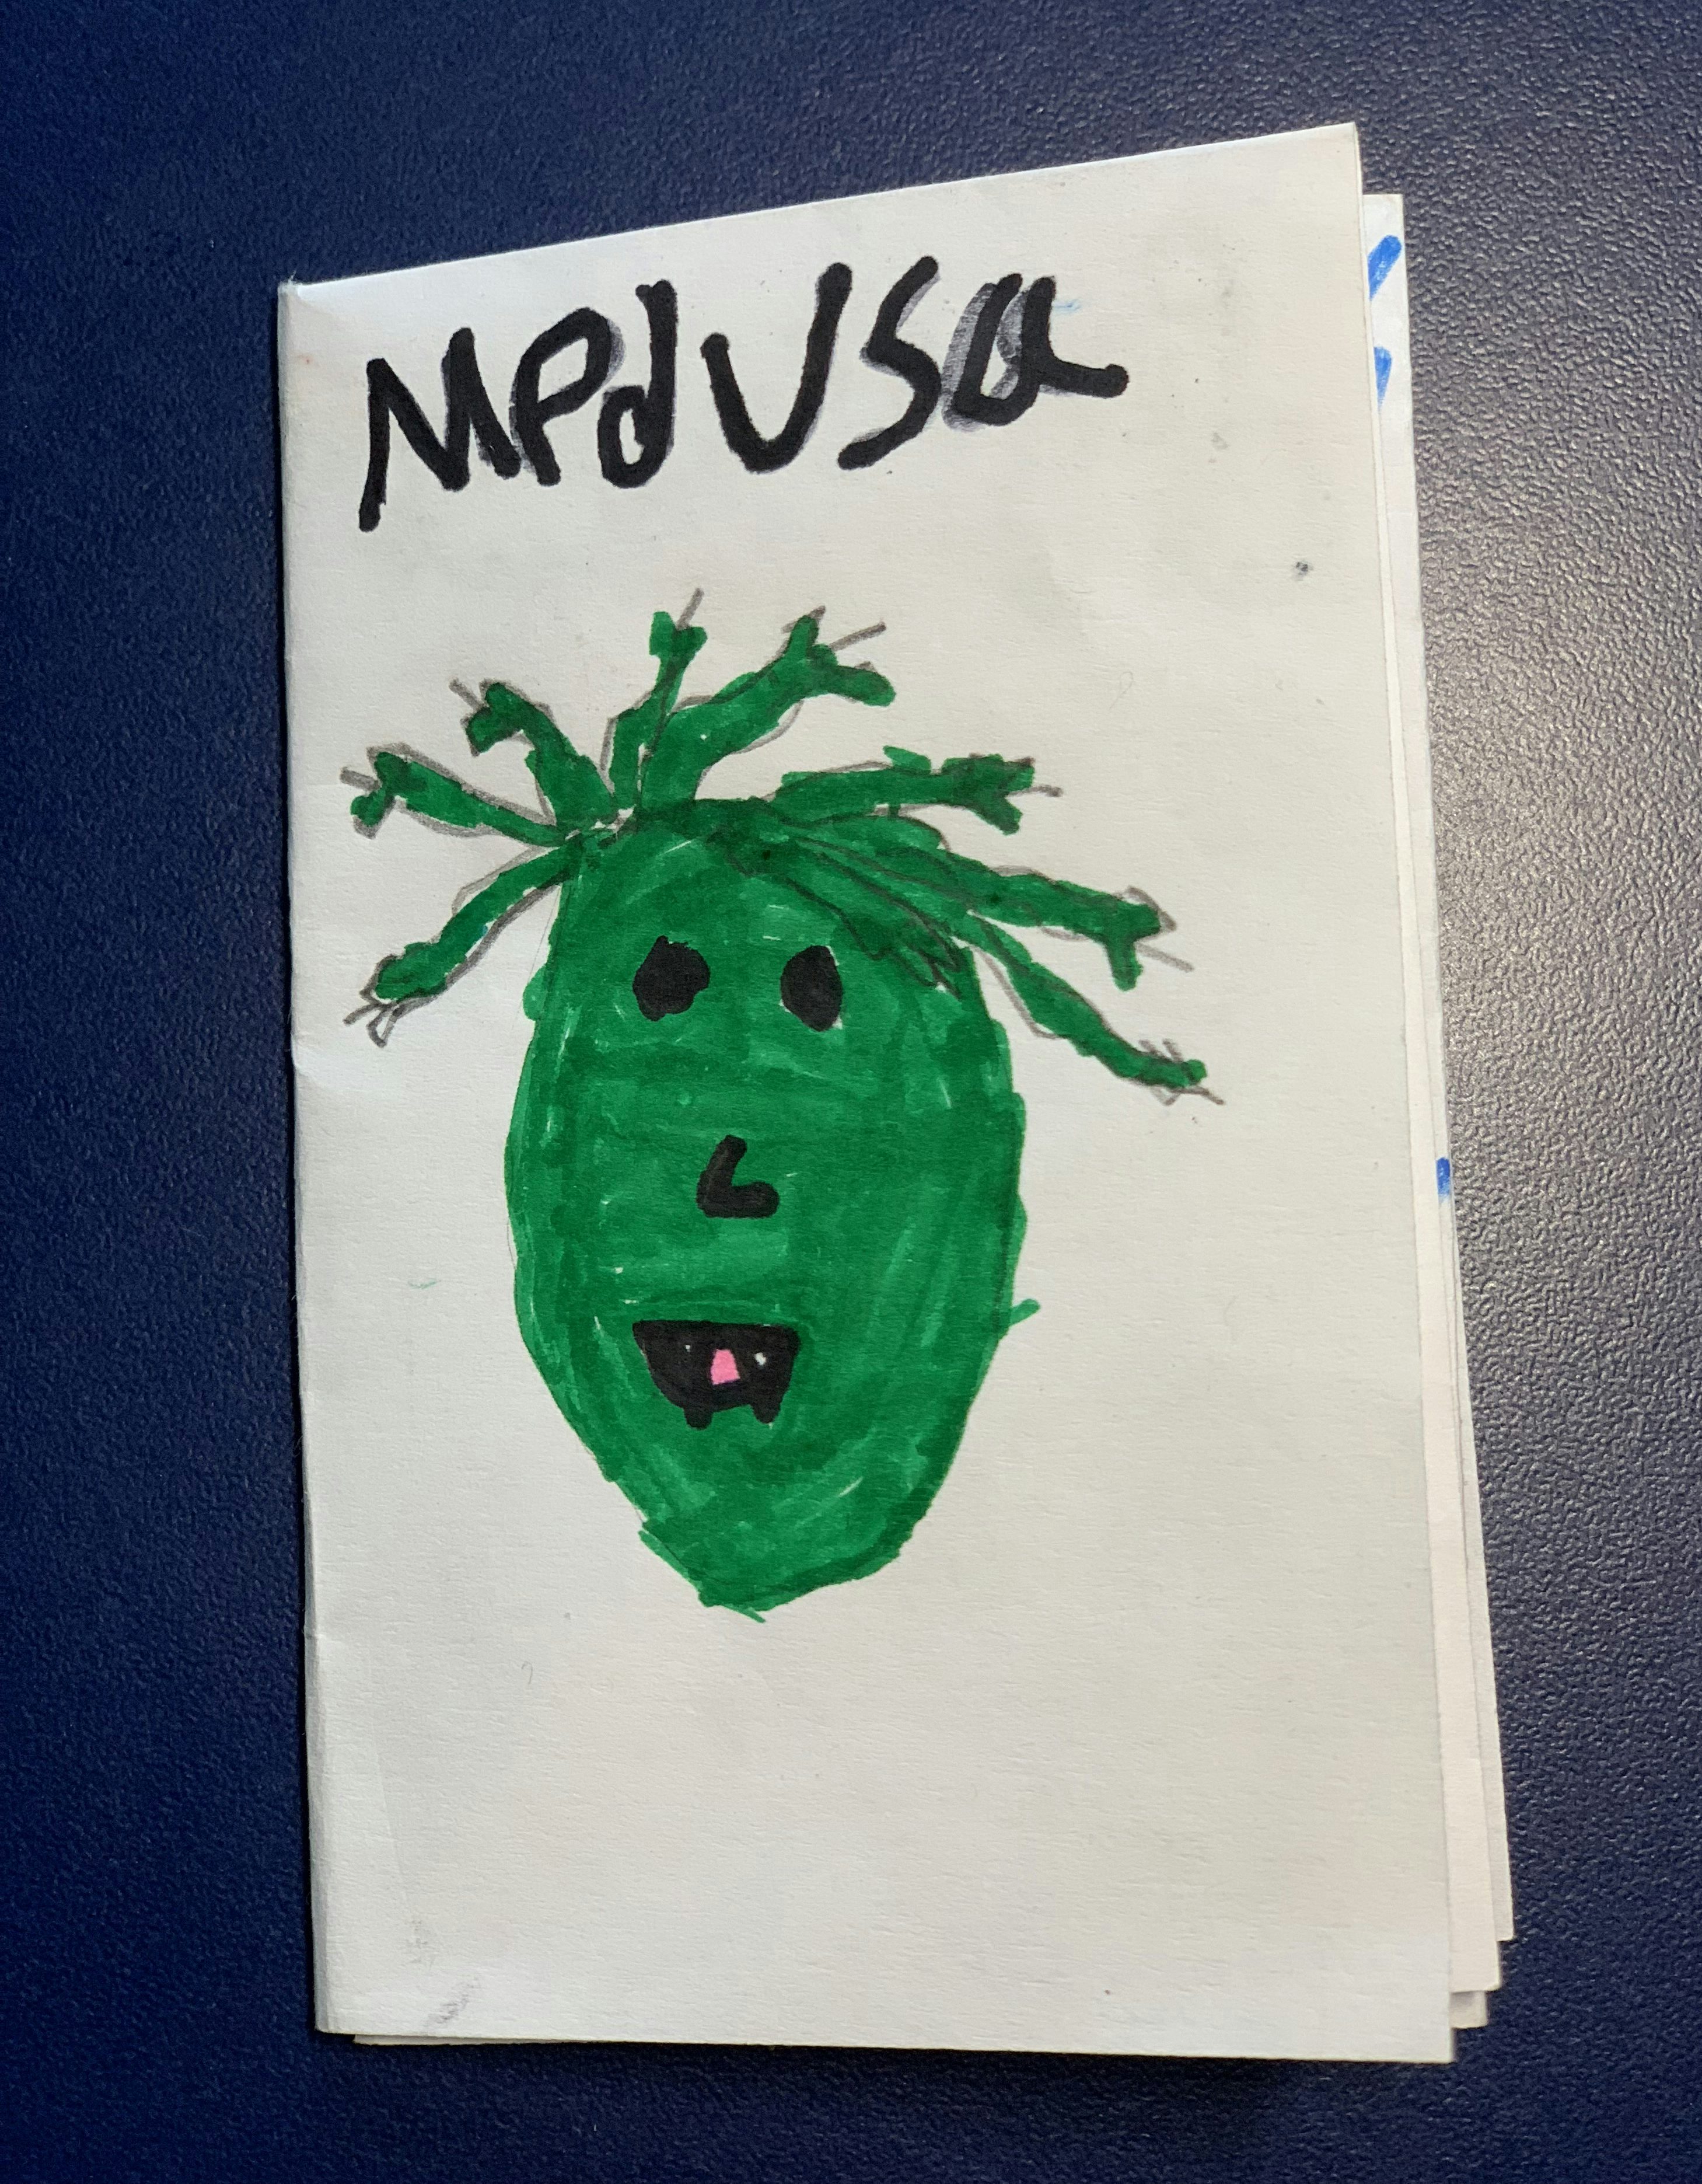 Medusa by Amar (age 9)